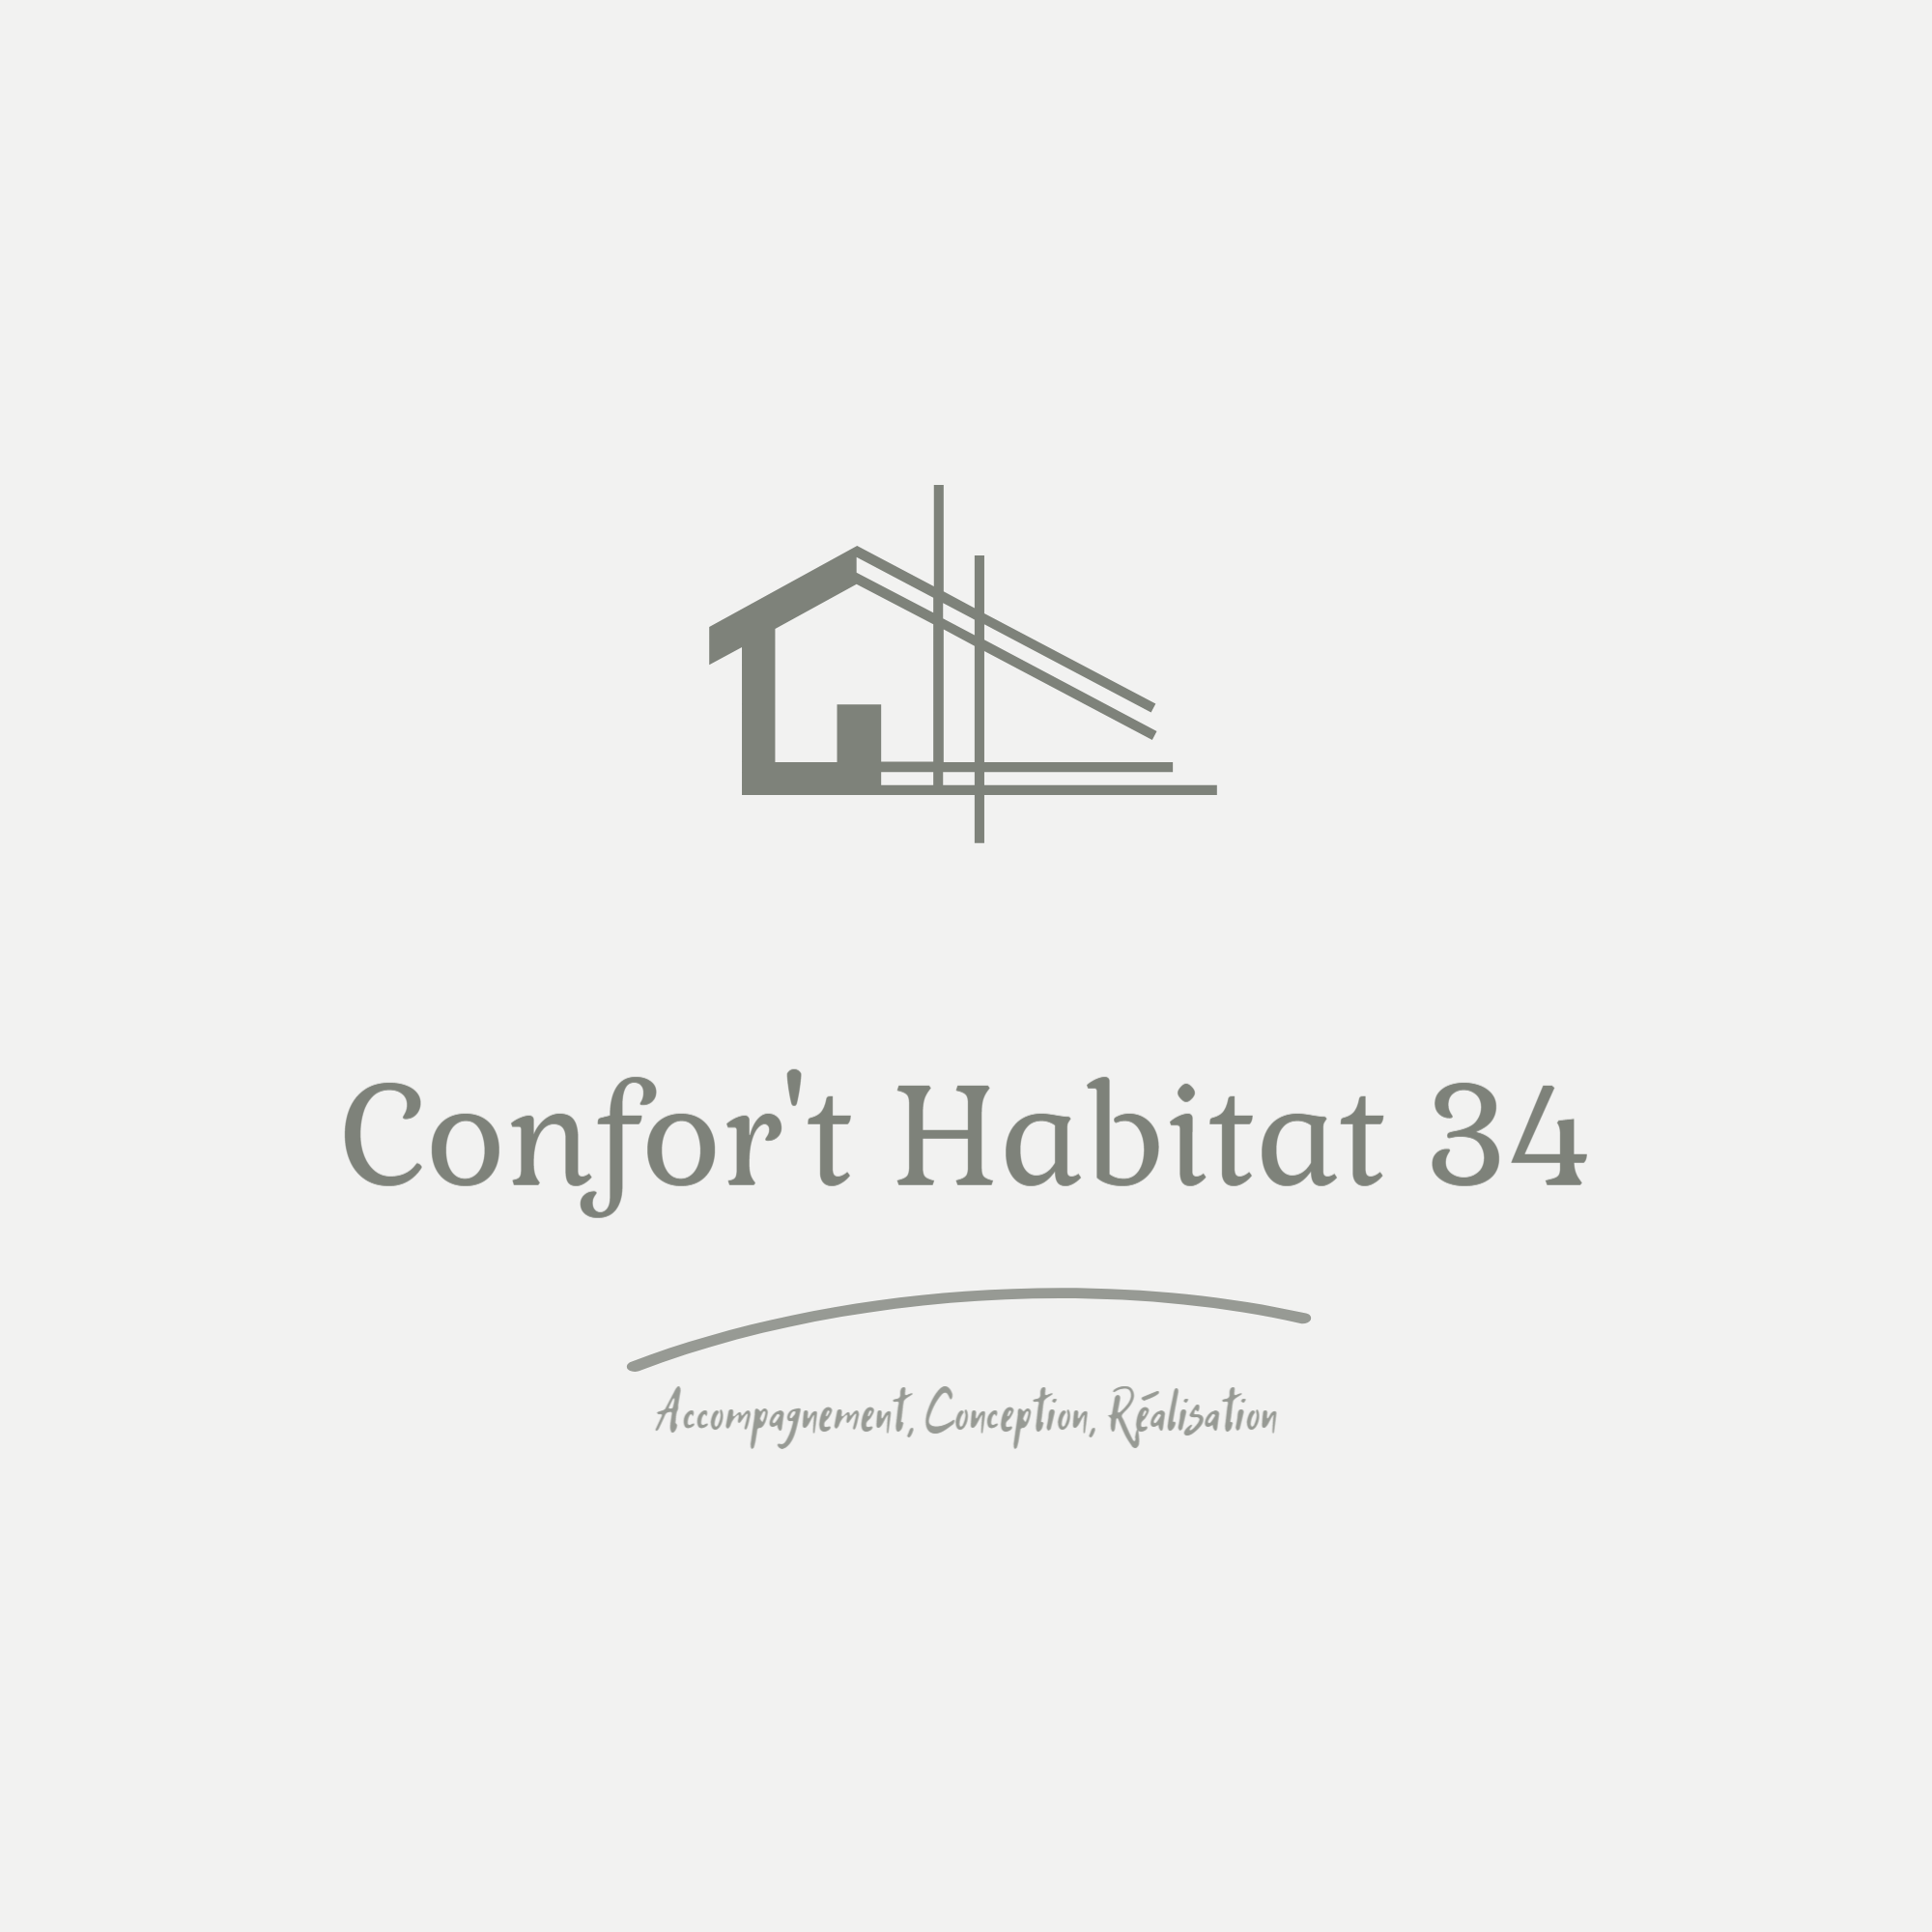 Logo de Confor't Habitat 34, société de travaux en Cuisine : aménagement et réalisation